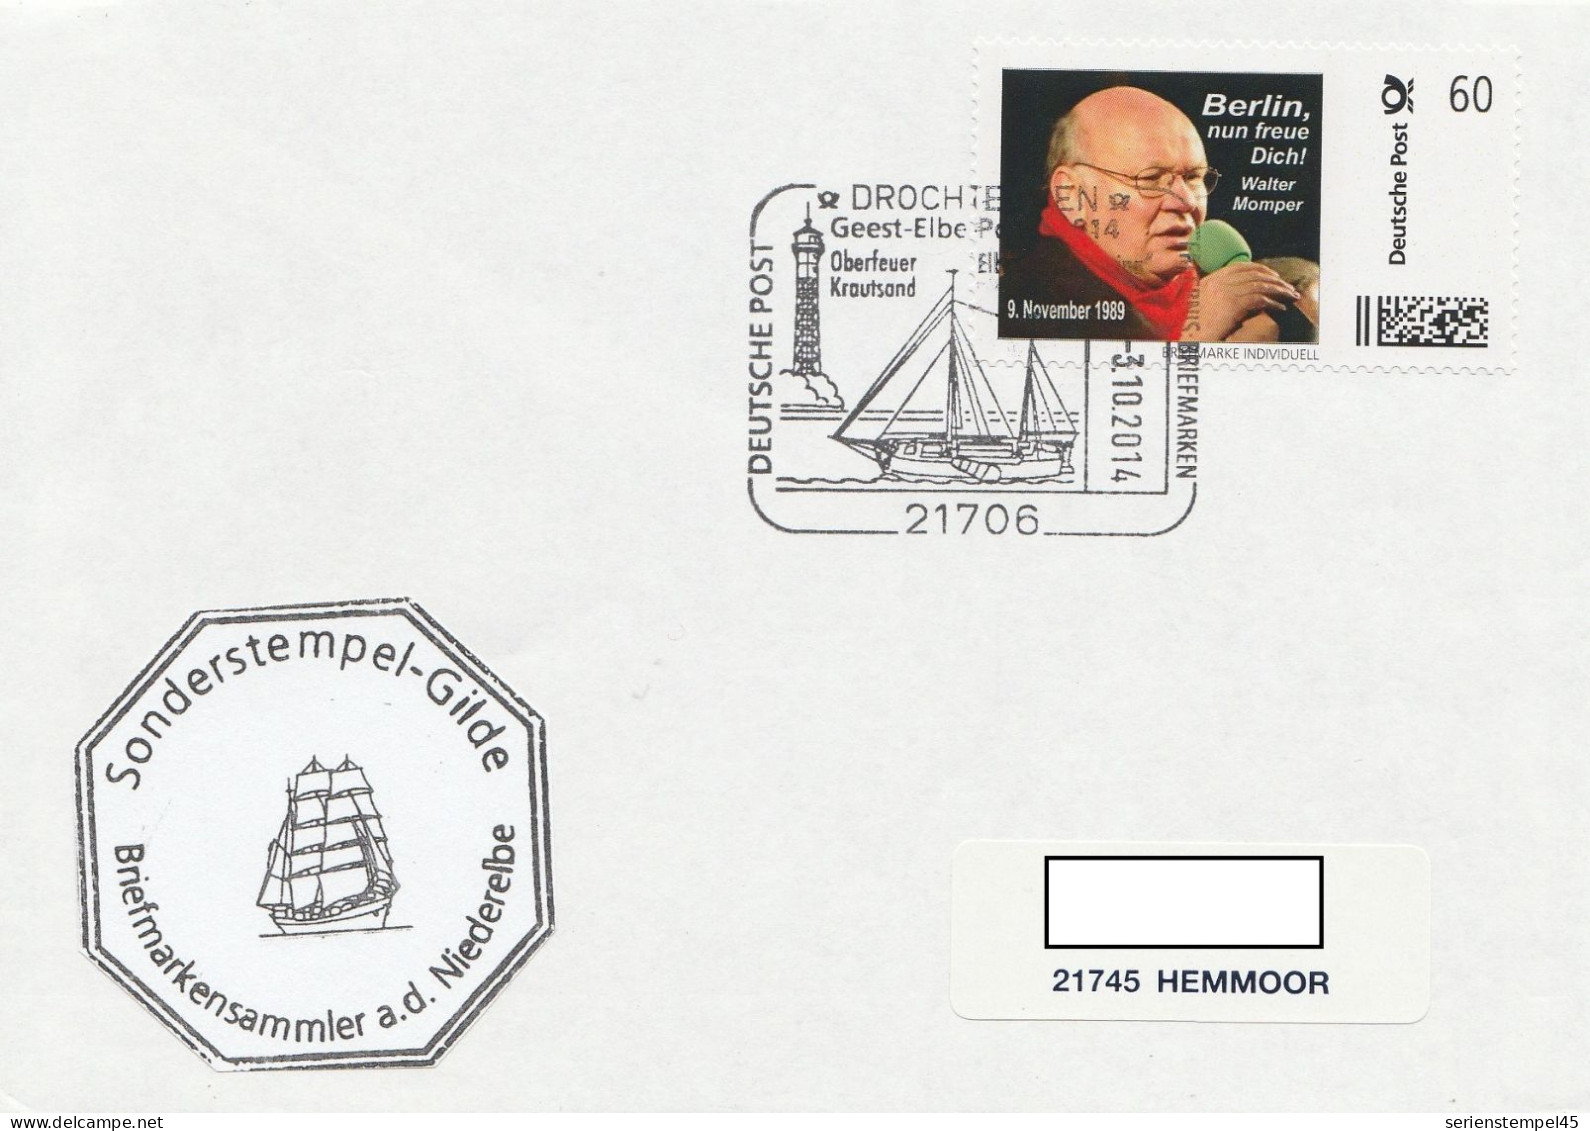 Deutschland Brief Mit Individuell Marke Motiv Walter Momper Berlin Nun Freue Dich 9 November 1989 - Personnalized Stamps